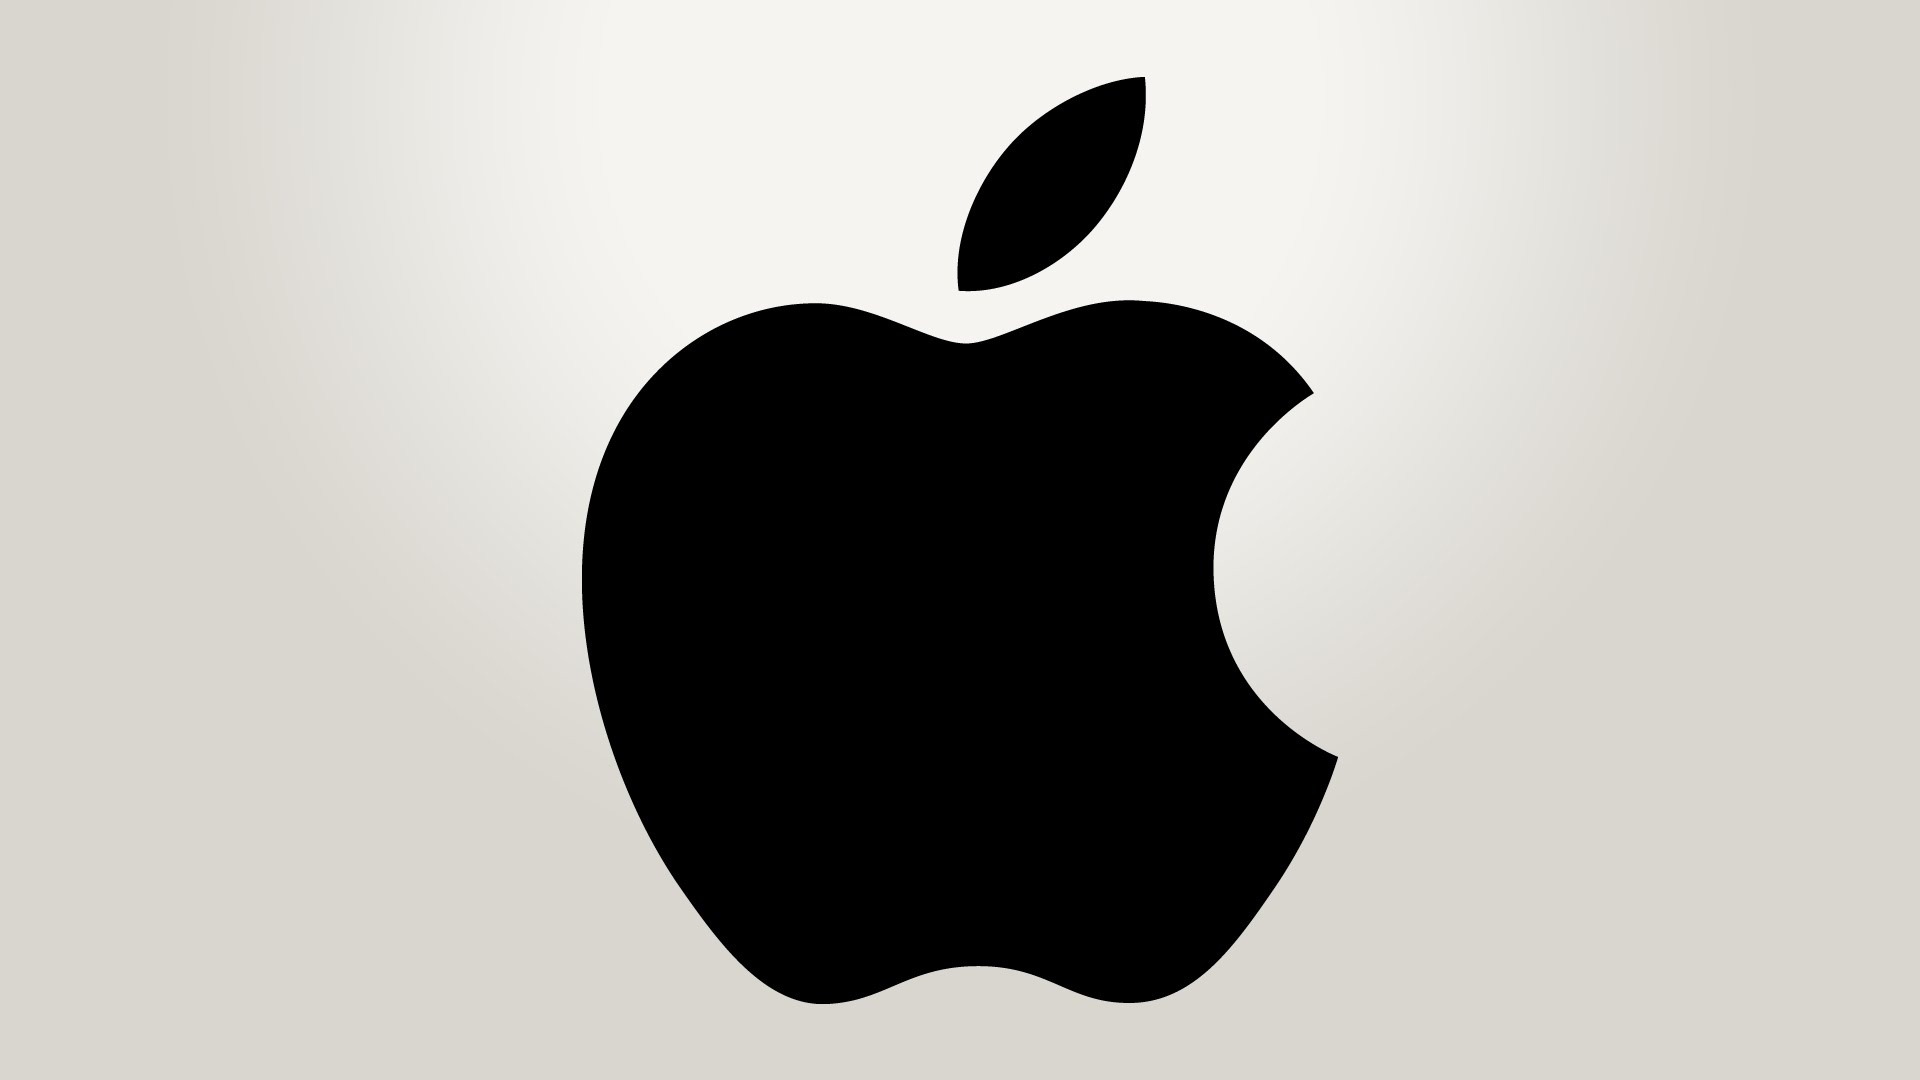 iOS 13 zainstalowany na poowie wszystkich iPhonw. 1/3 wszystkich iPadw ma ju iPadOS 13